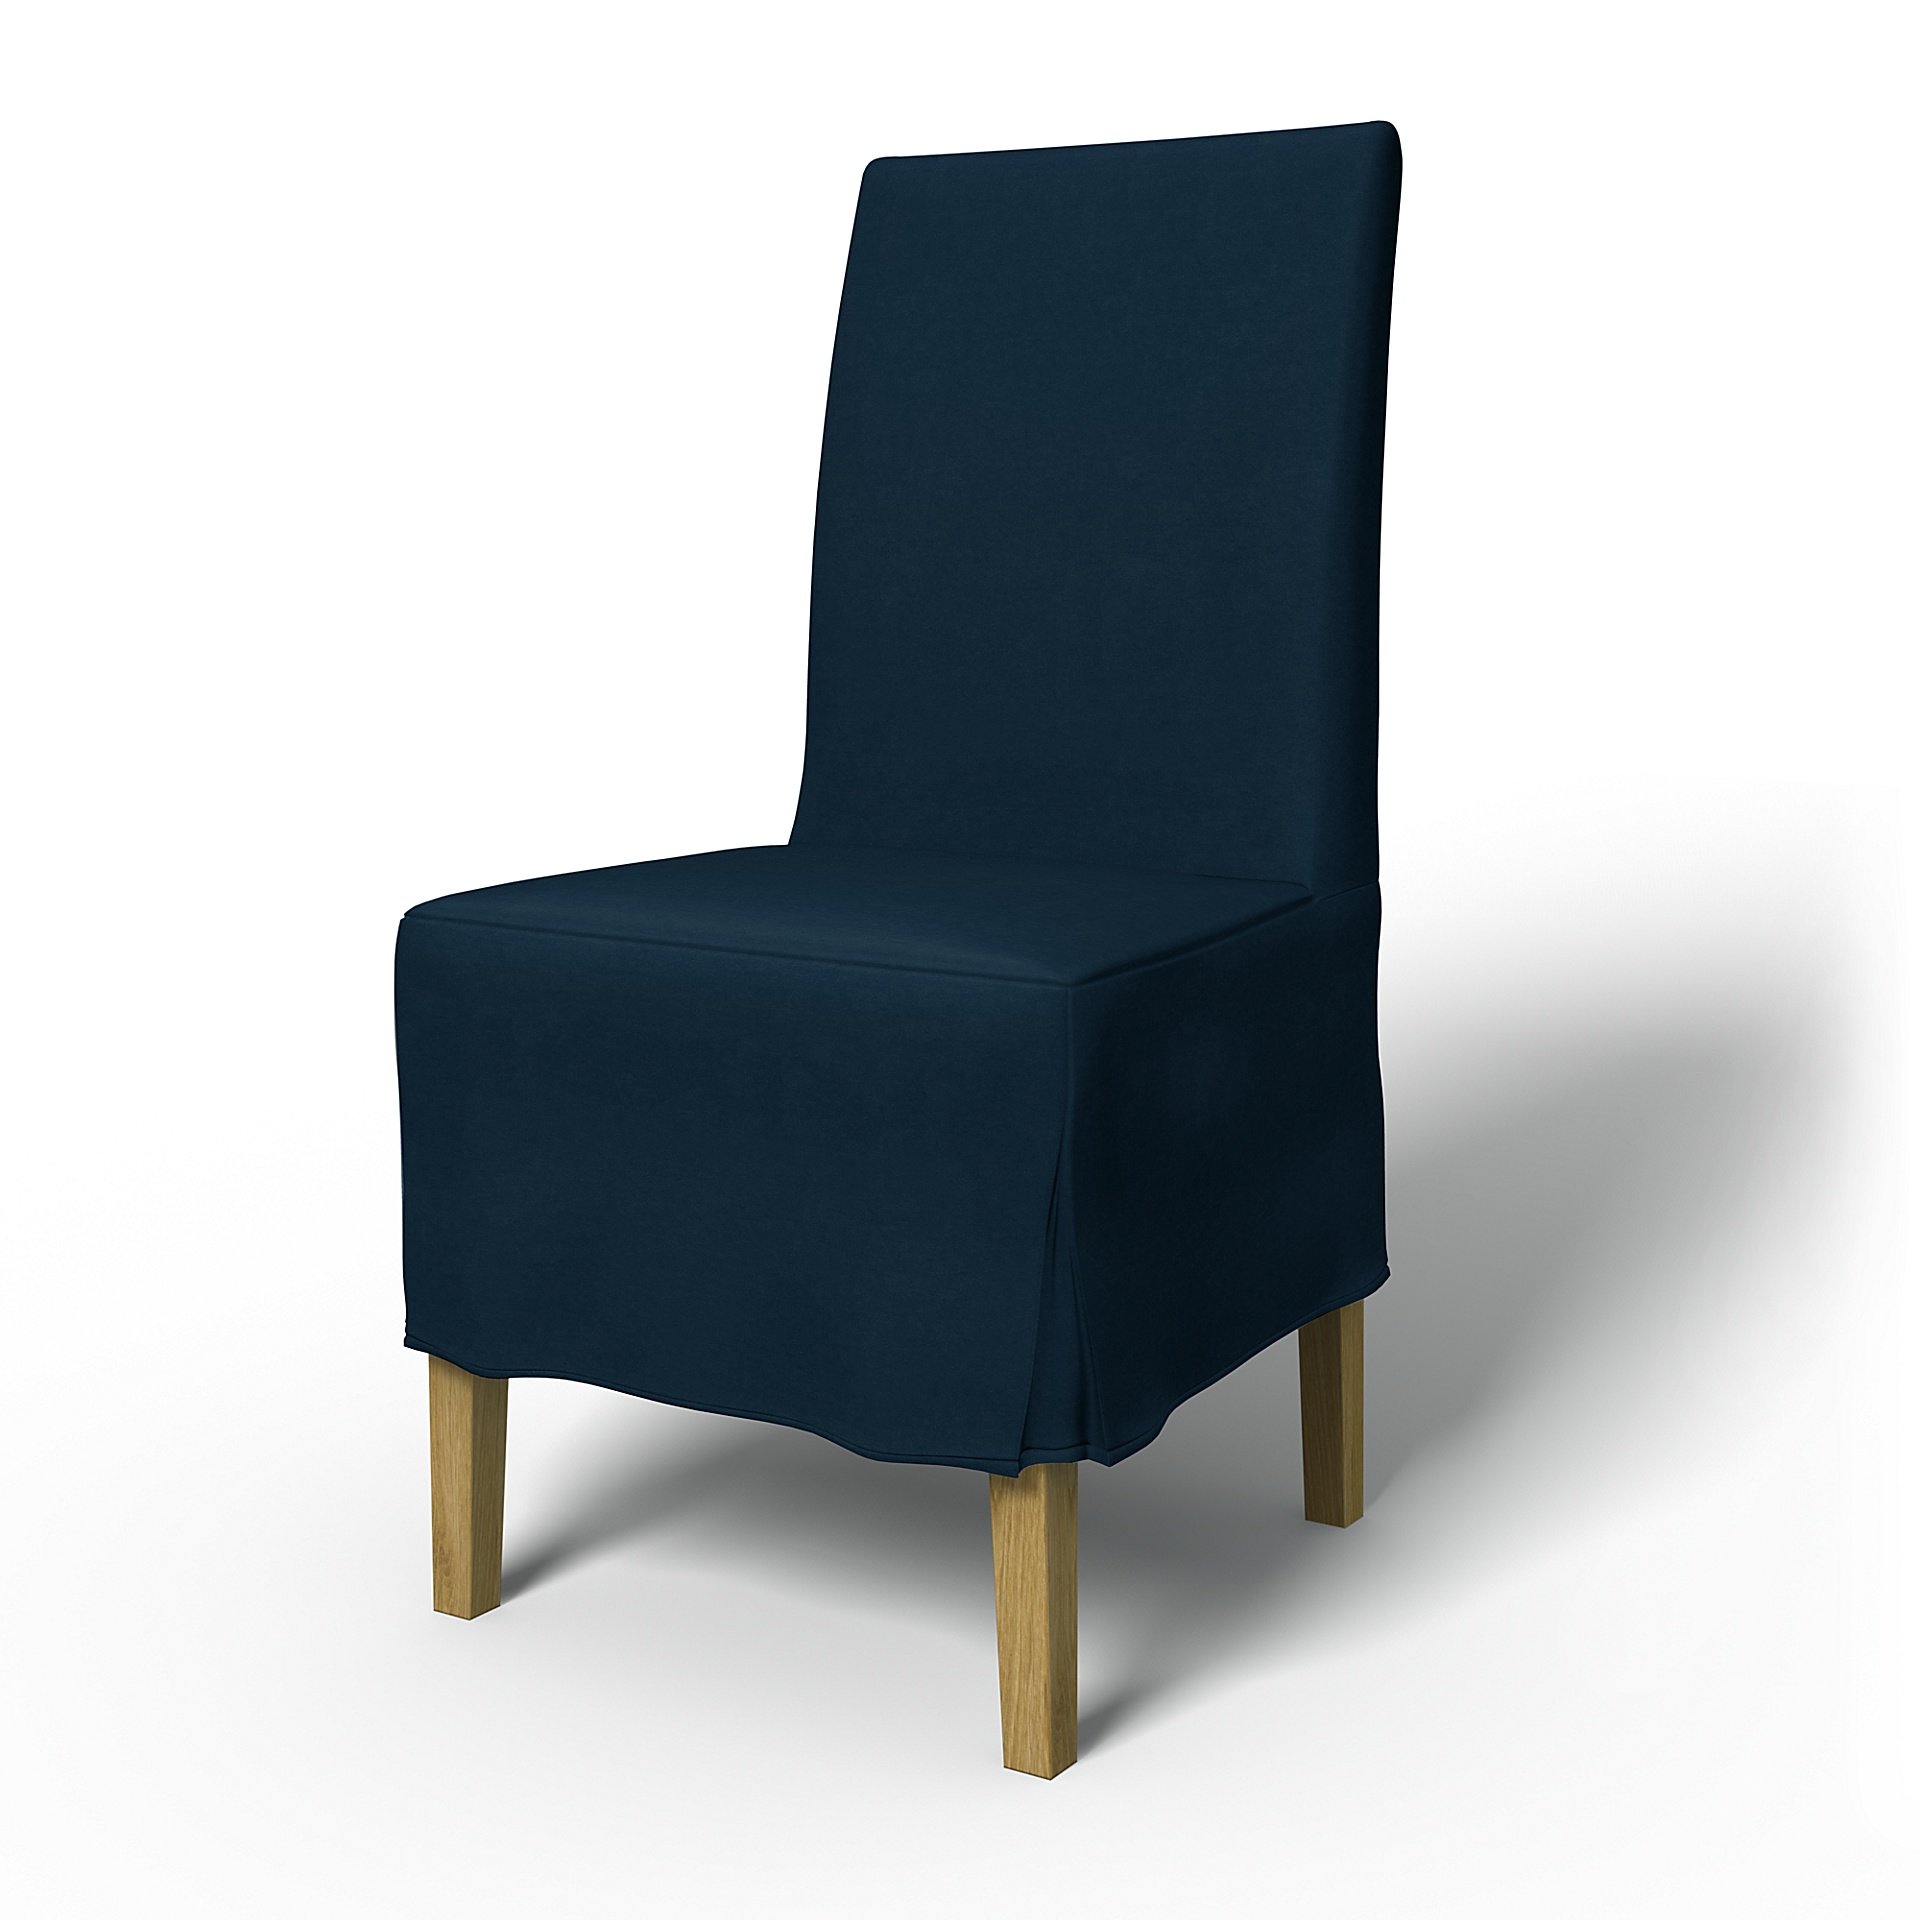 IKEA - Henriksdal Dining Chair Cover Medium skirt with Box Pleat (Standard model), Midnight, Velvet 